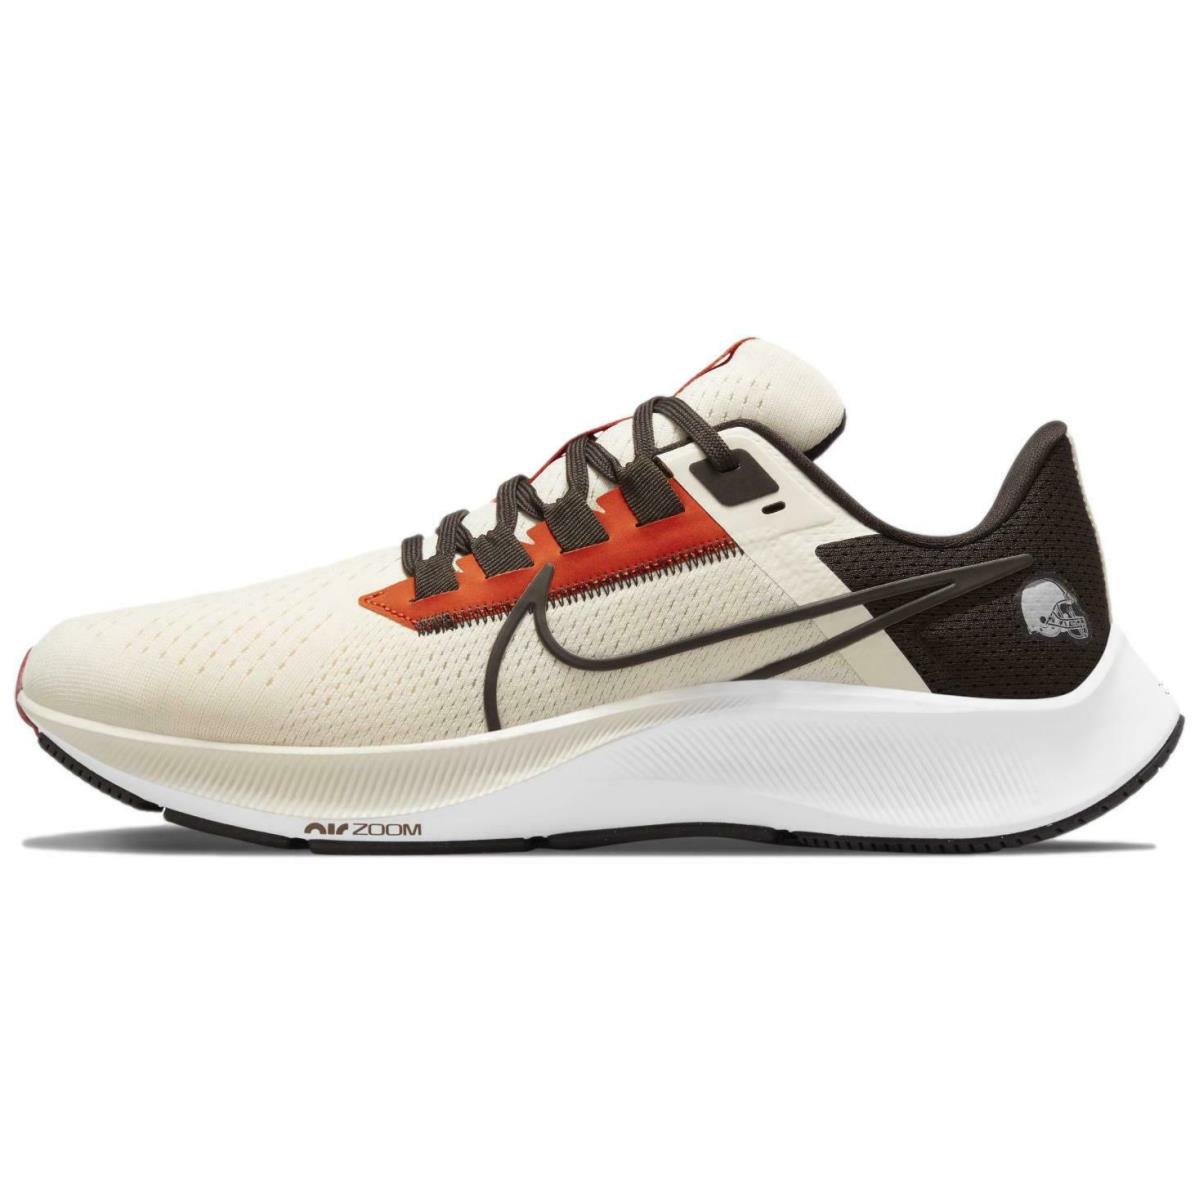 Nike shoes Air Zoom Pegasus - Natural/Seal Brown-Team Orange 0